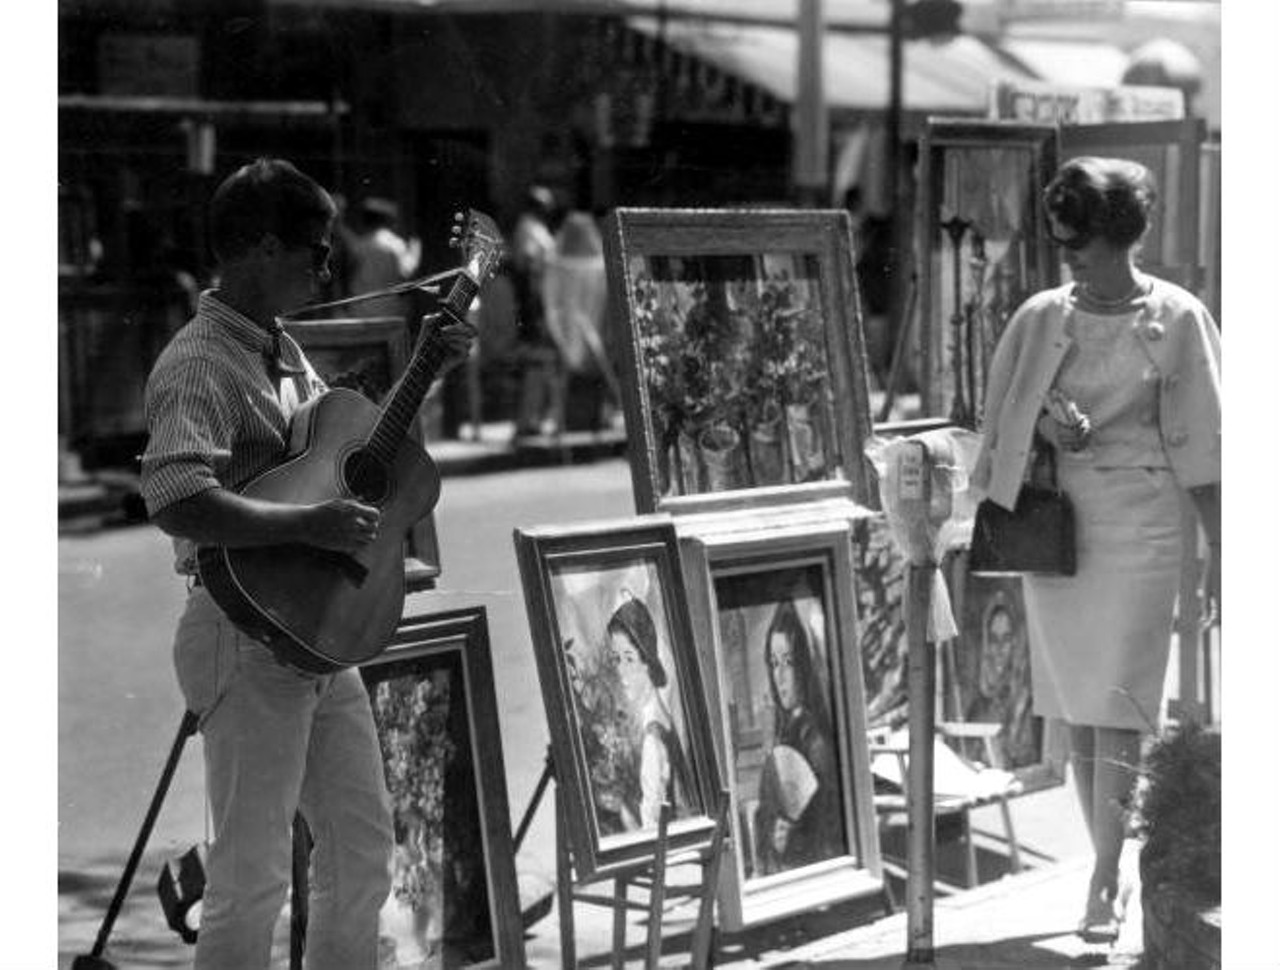 Sidewalk arts festival, 1964